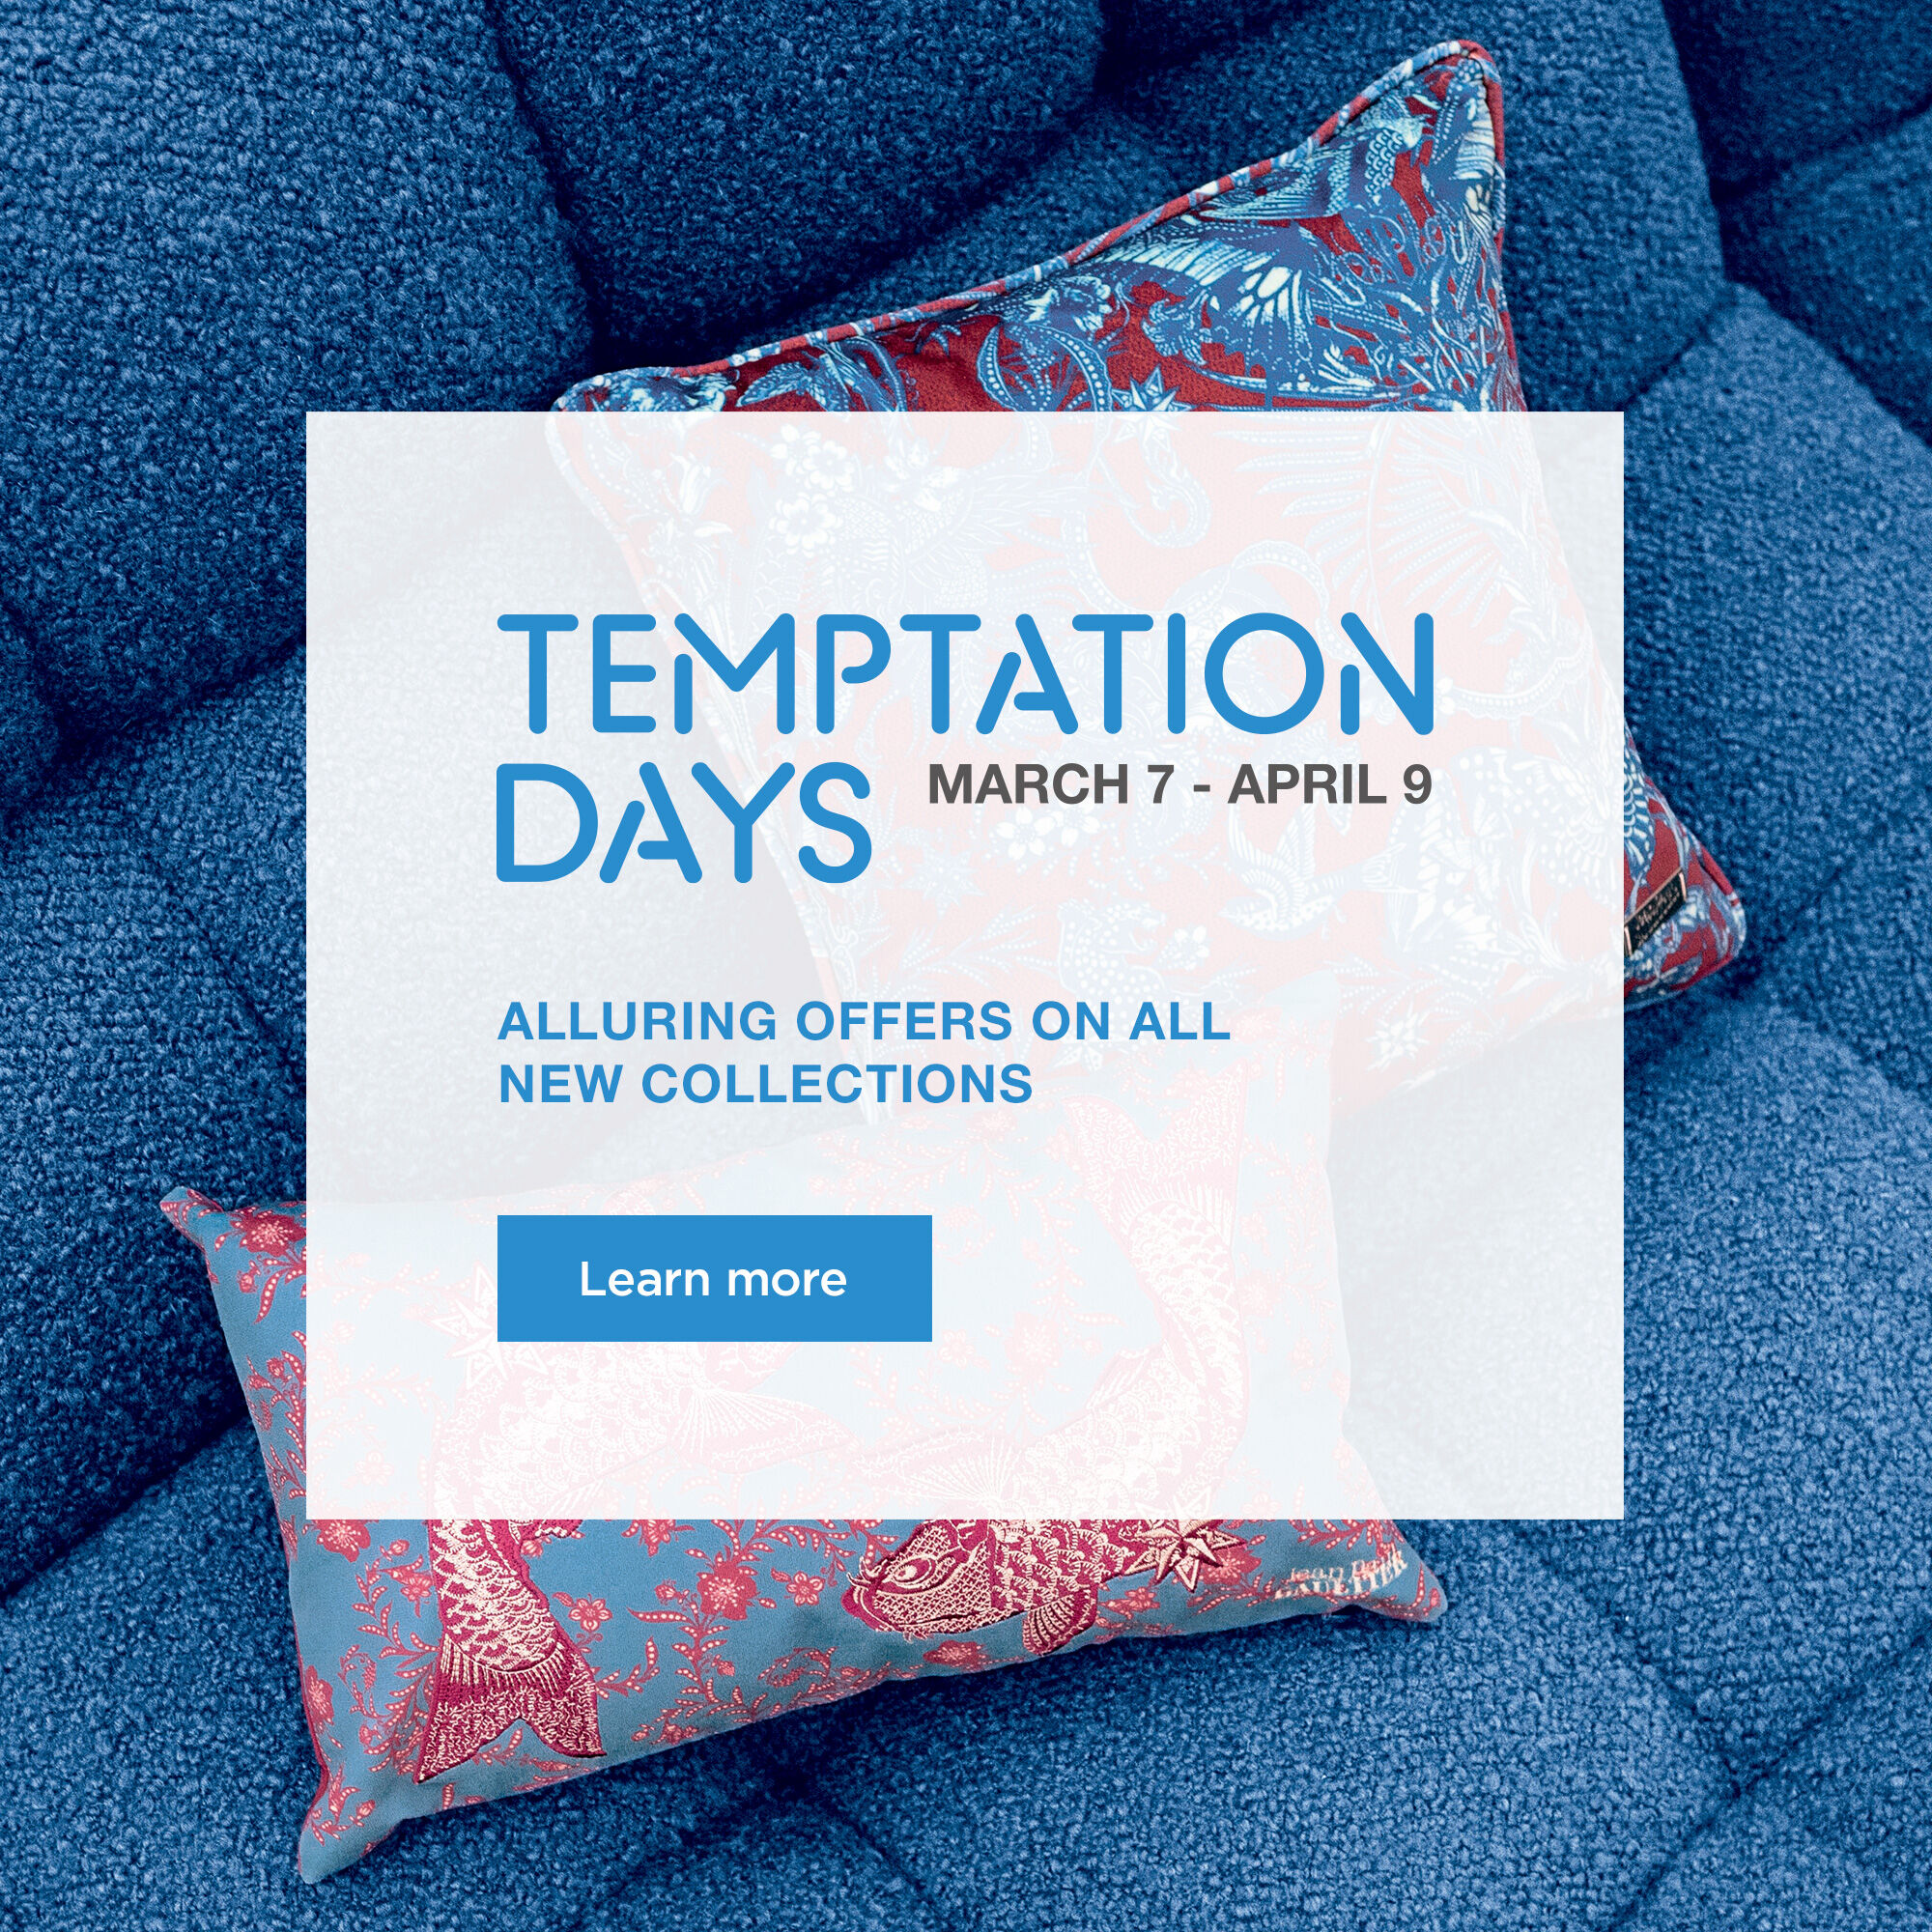 Temptation Days, until April 9th